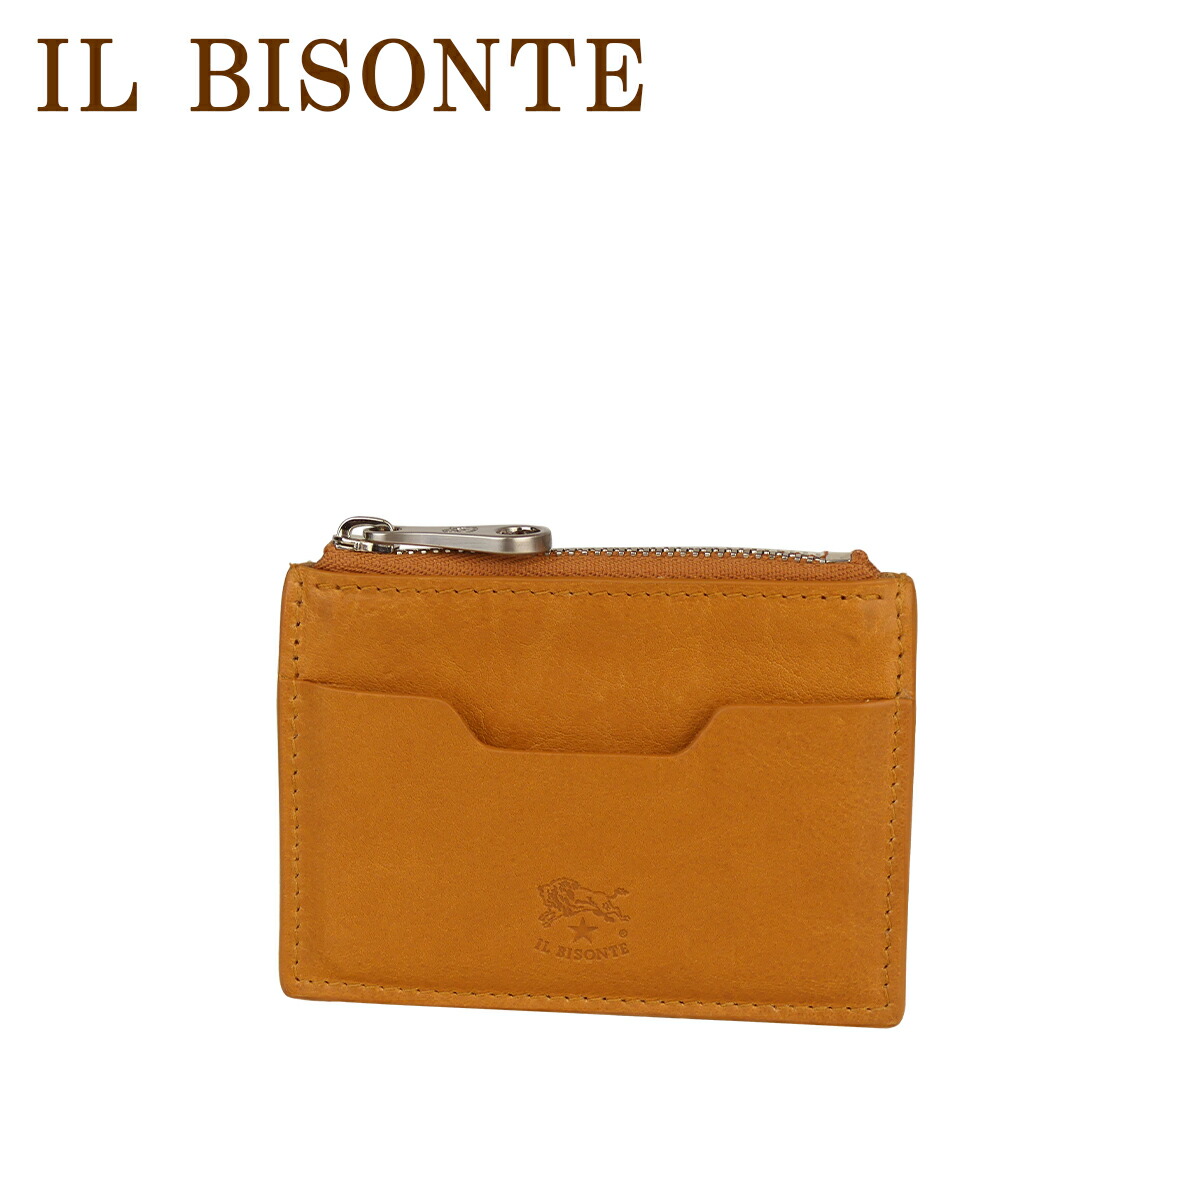 イルビゾンテ カードケース CARD CASE IL BISONTE 名刺入れ SCC115 PO0...